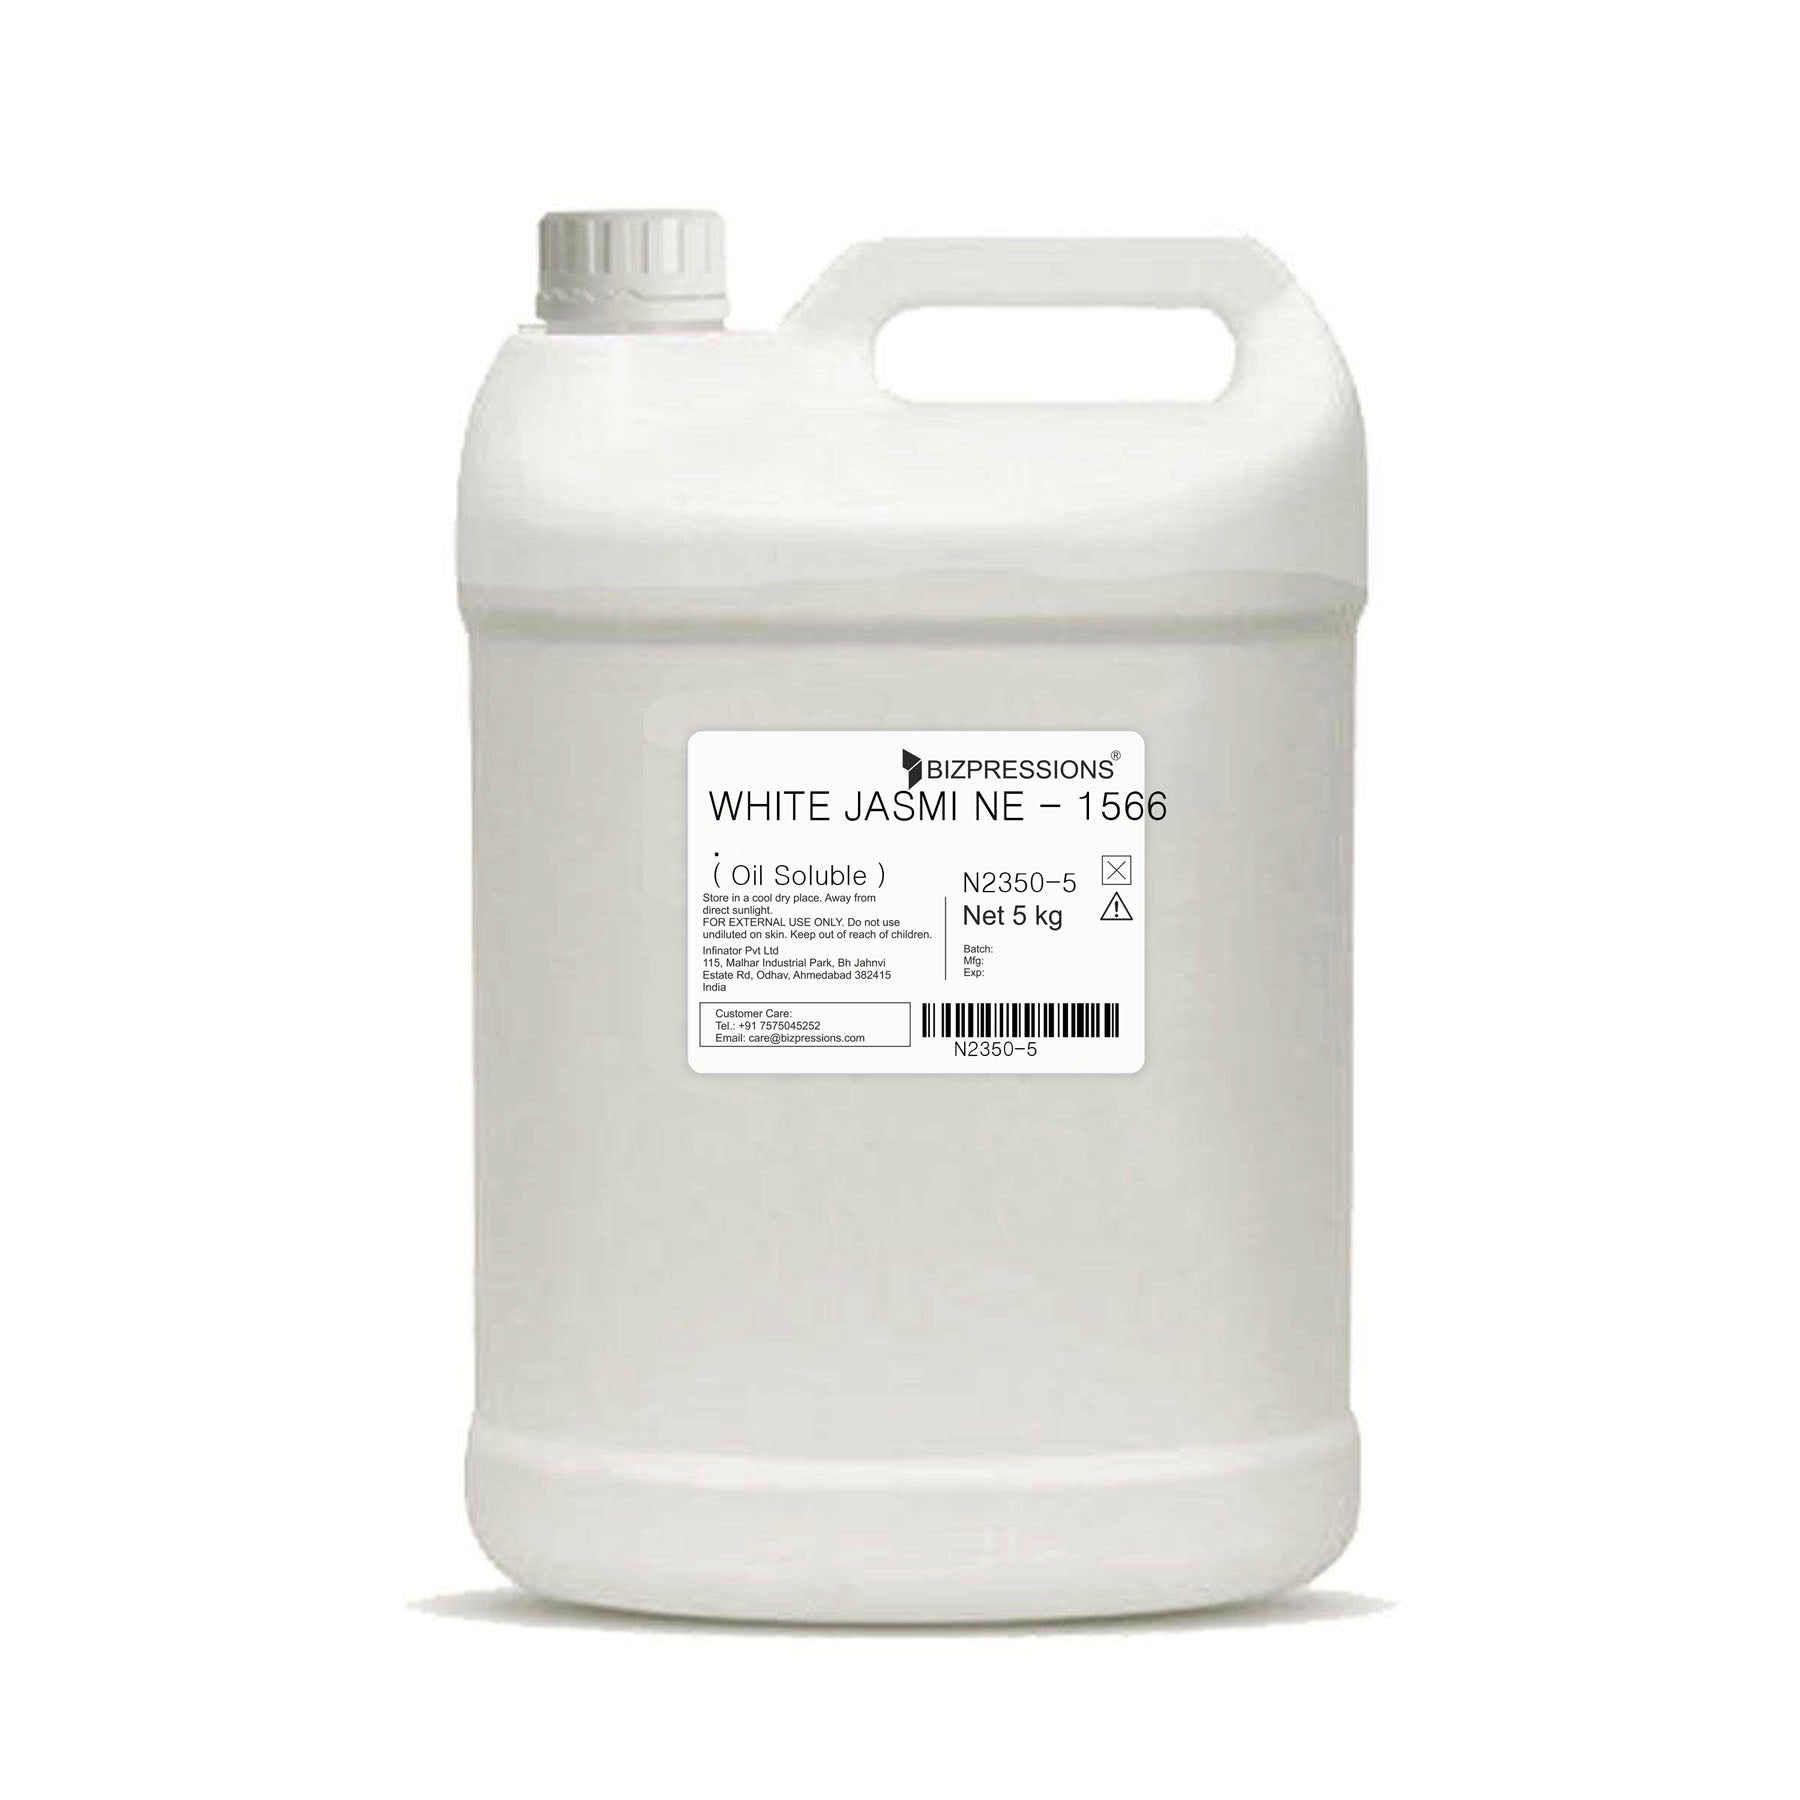 WHITE JASMINE - 1566 - Fragrance ( Oil Soluble ) - 5 kg